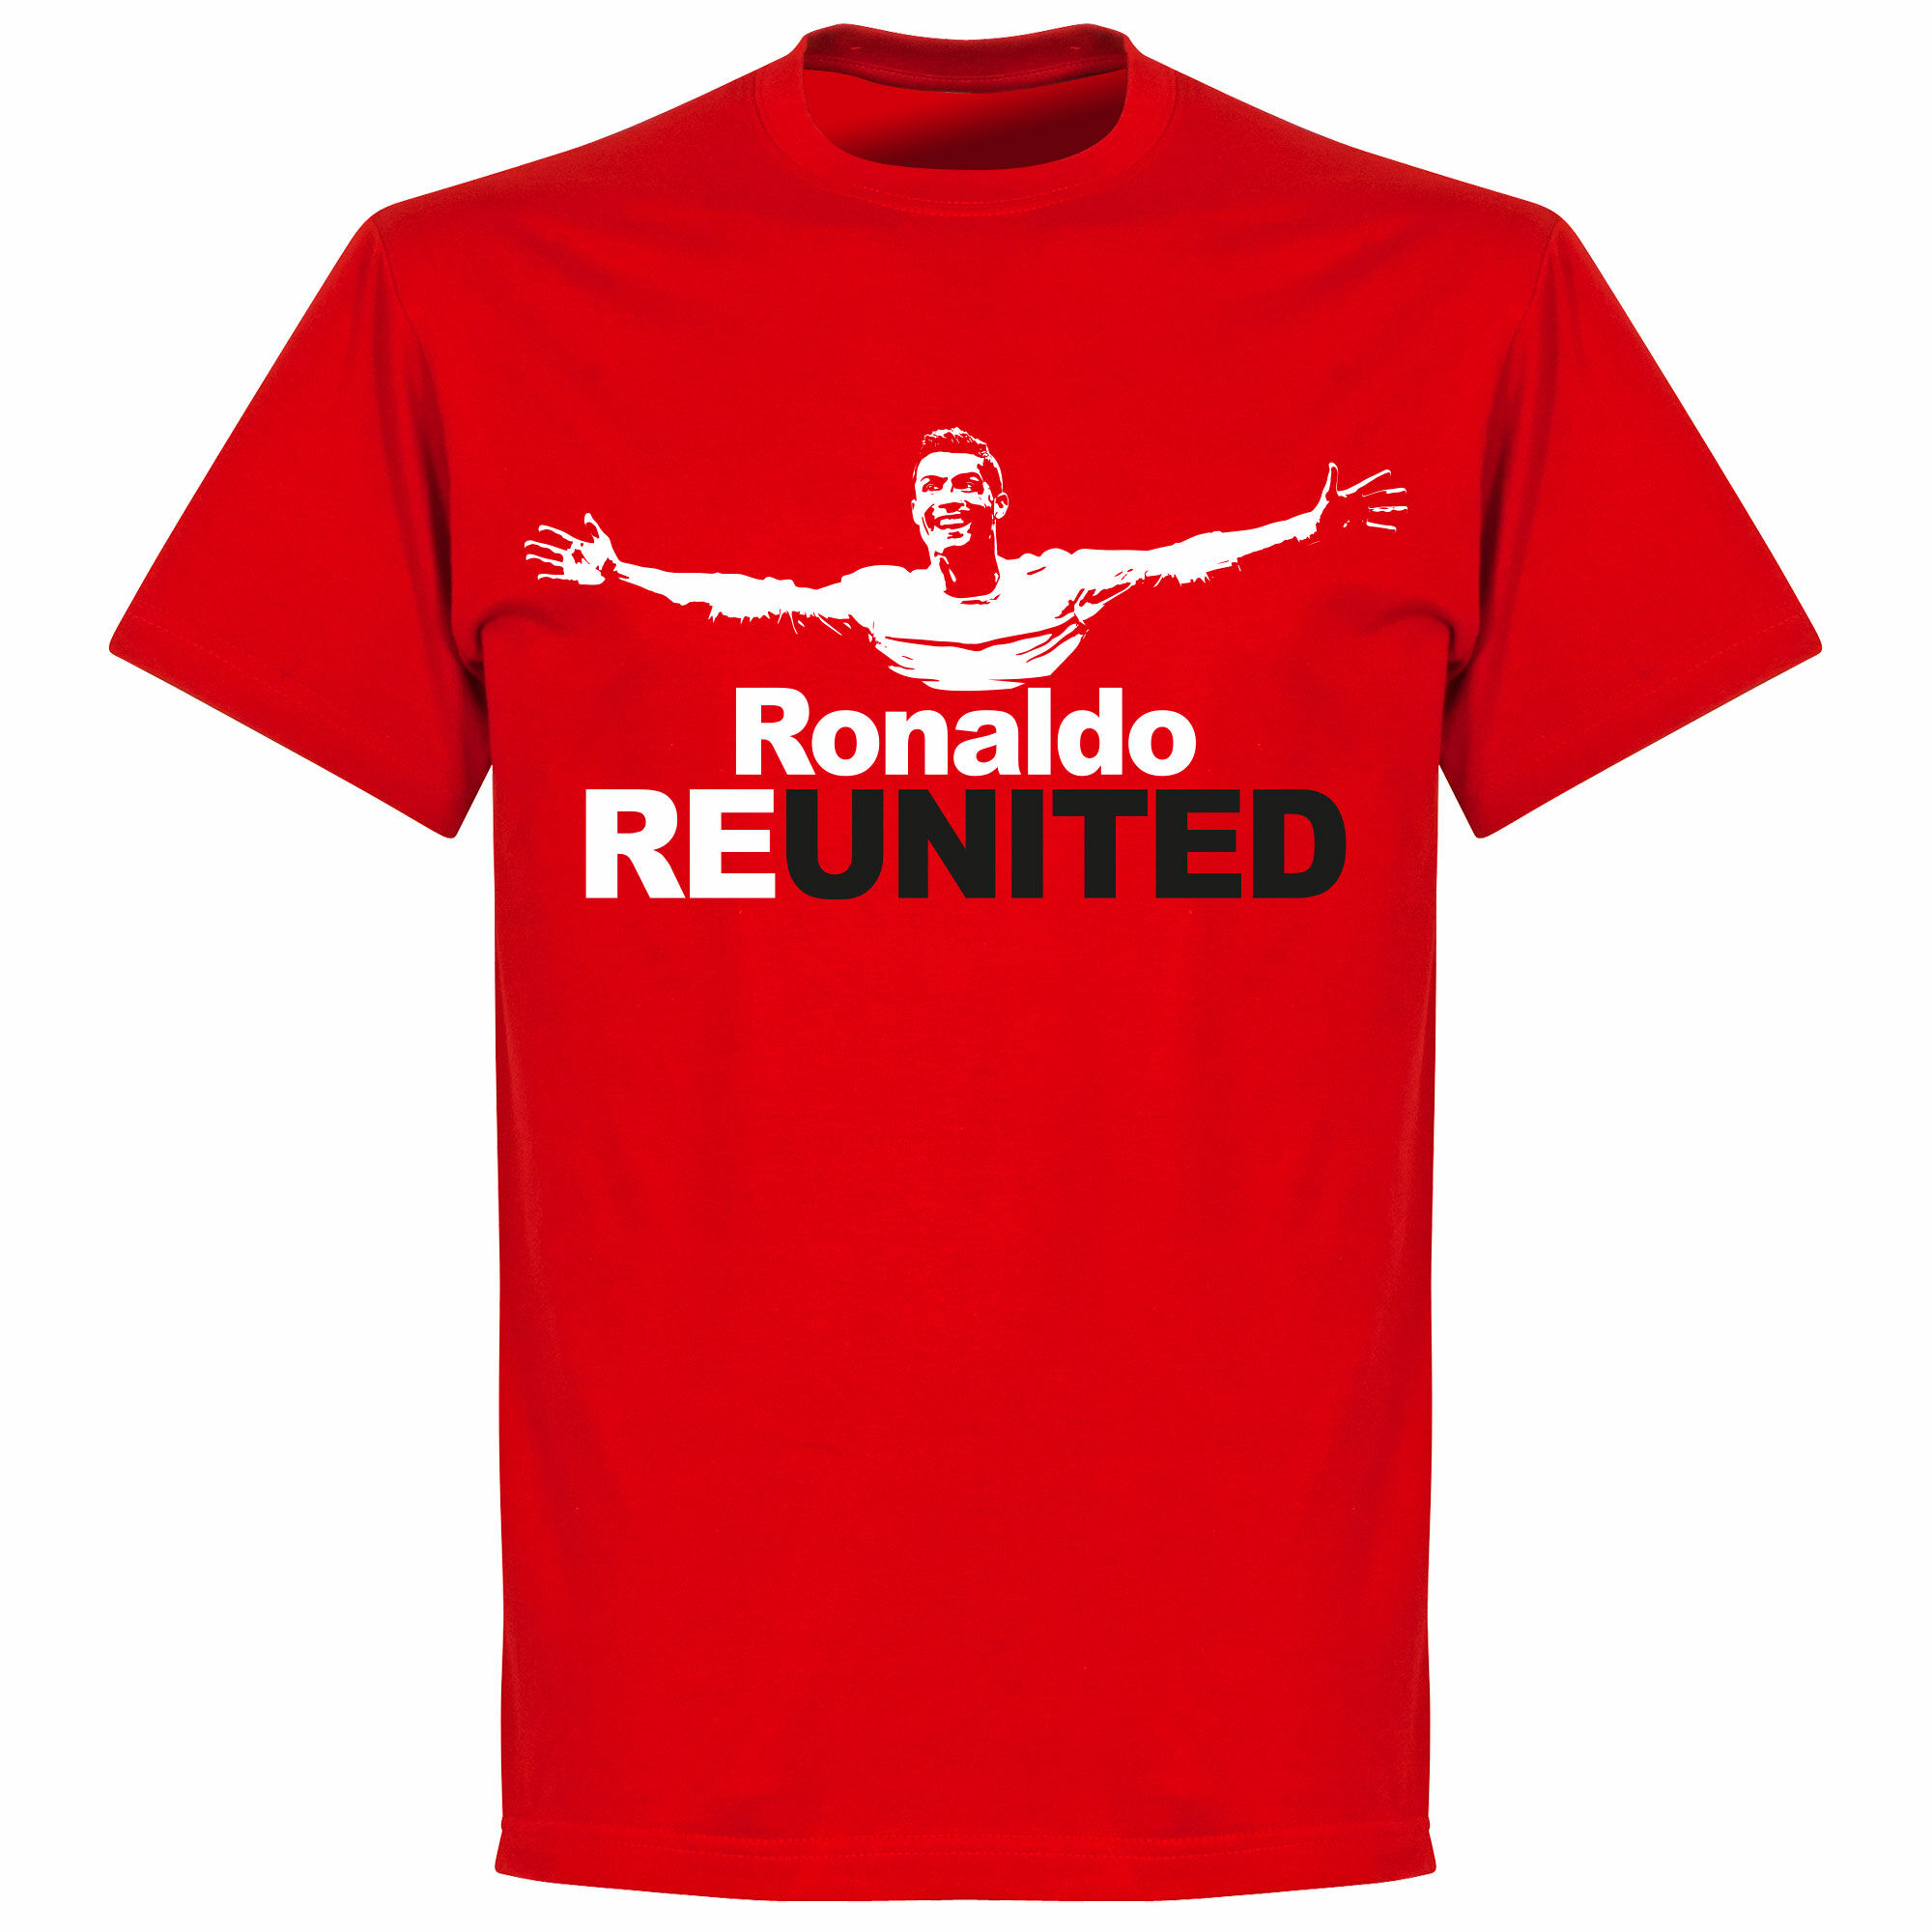 Manchester United - Tričko "Re United" dětské - červené, Ronaldo